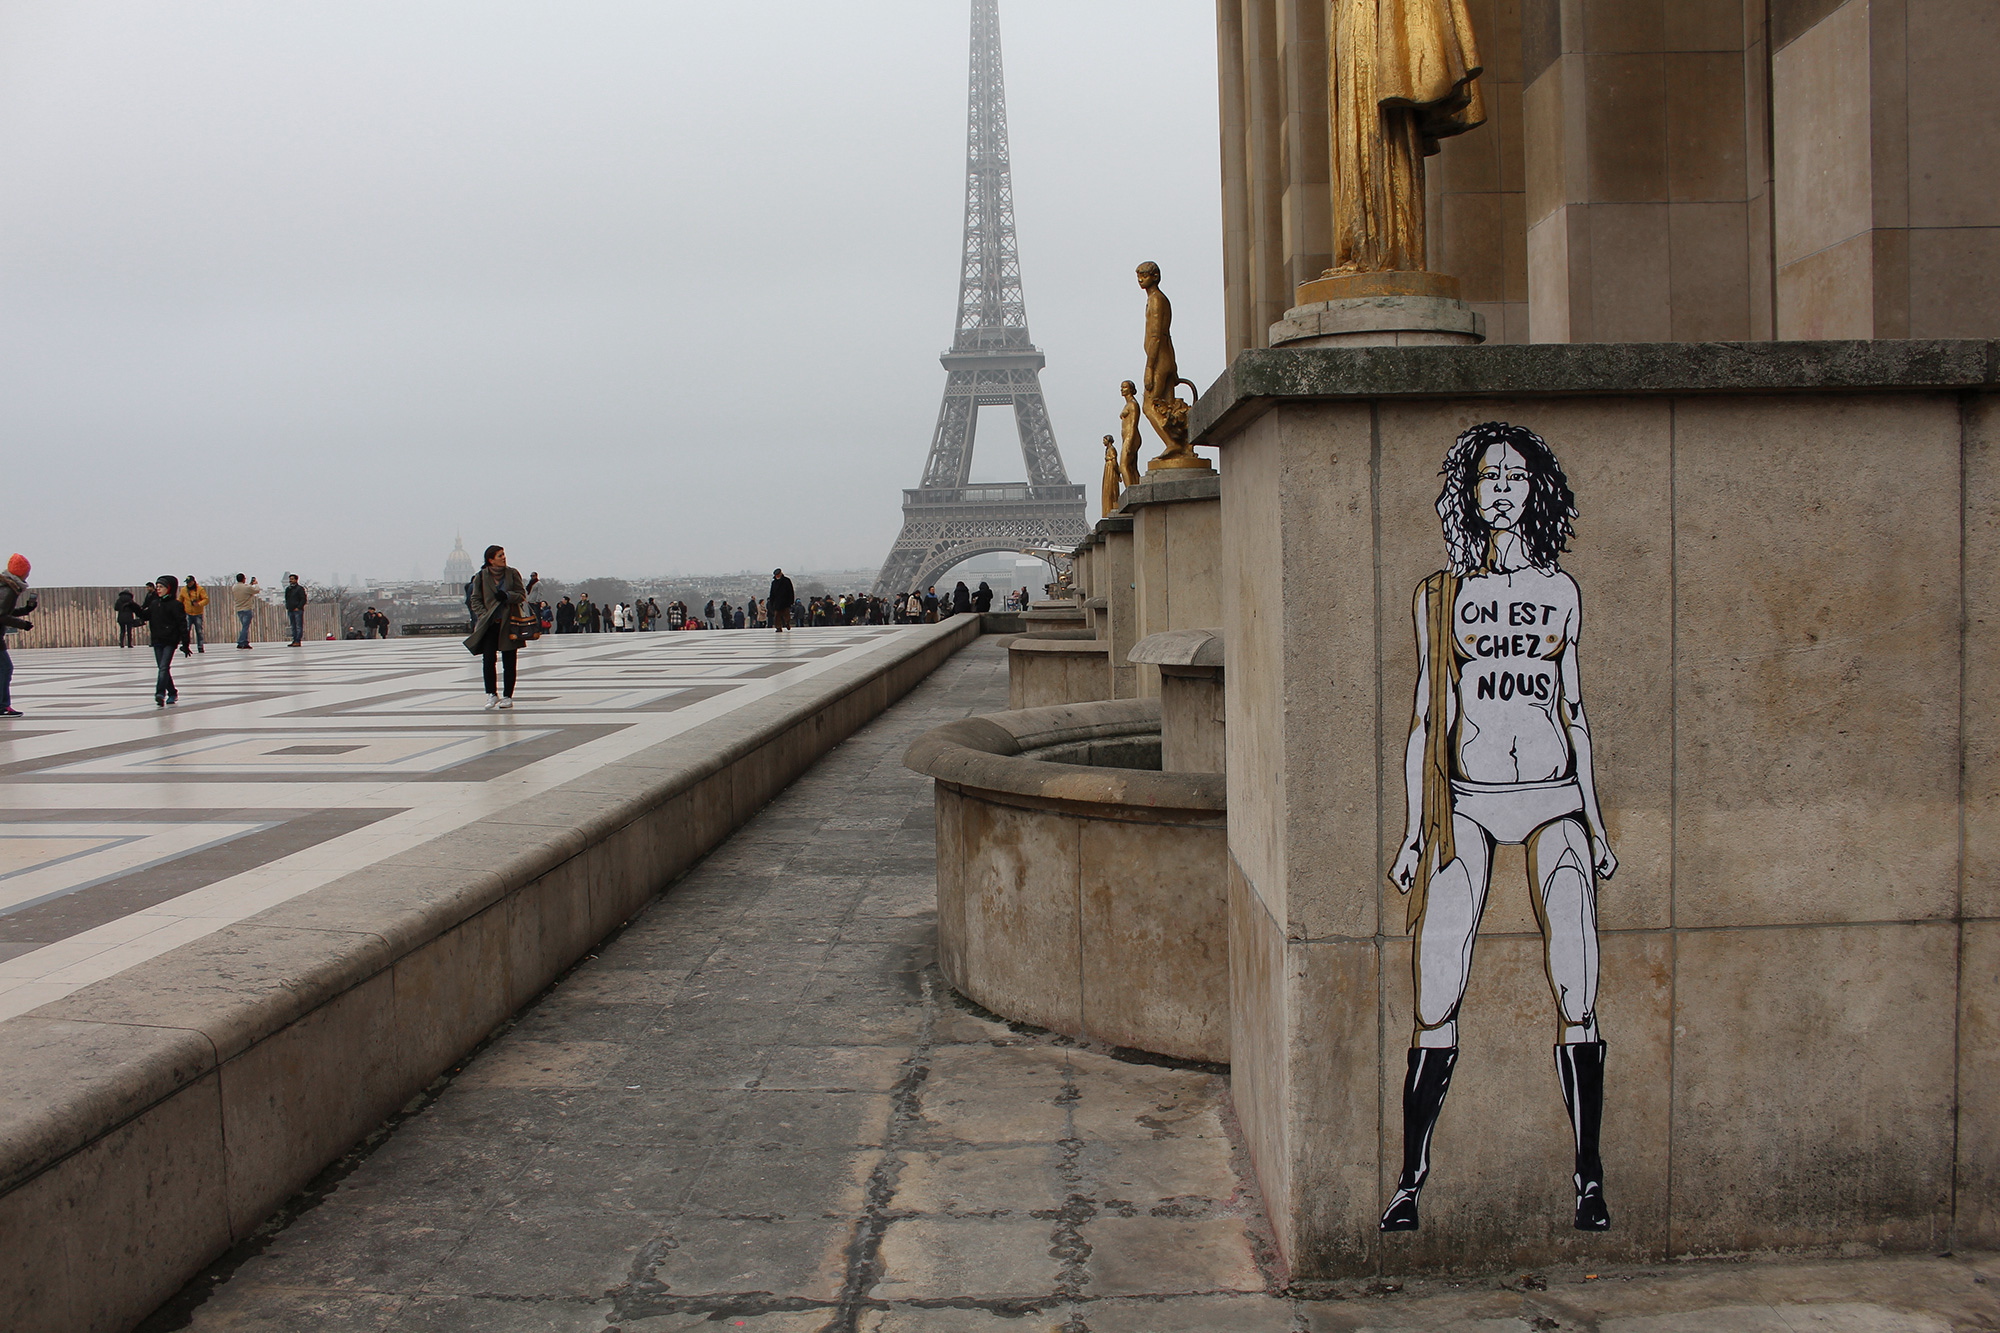 Mahn Kloix Femen ON EST CHEZ NOUS